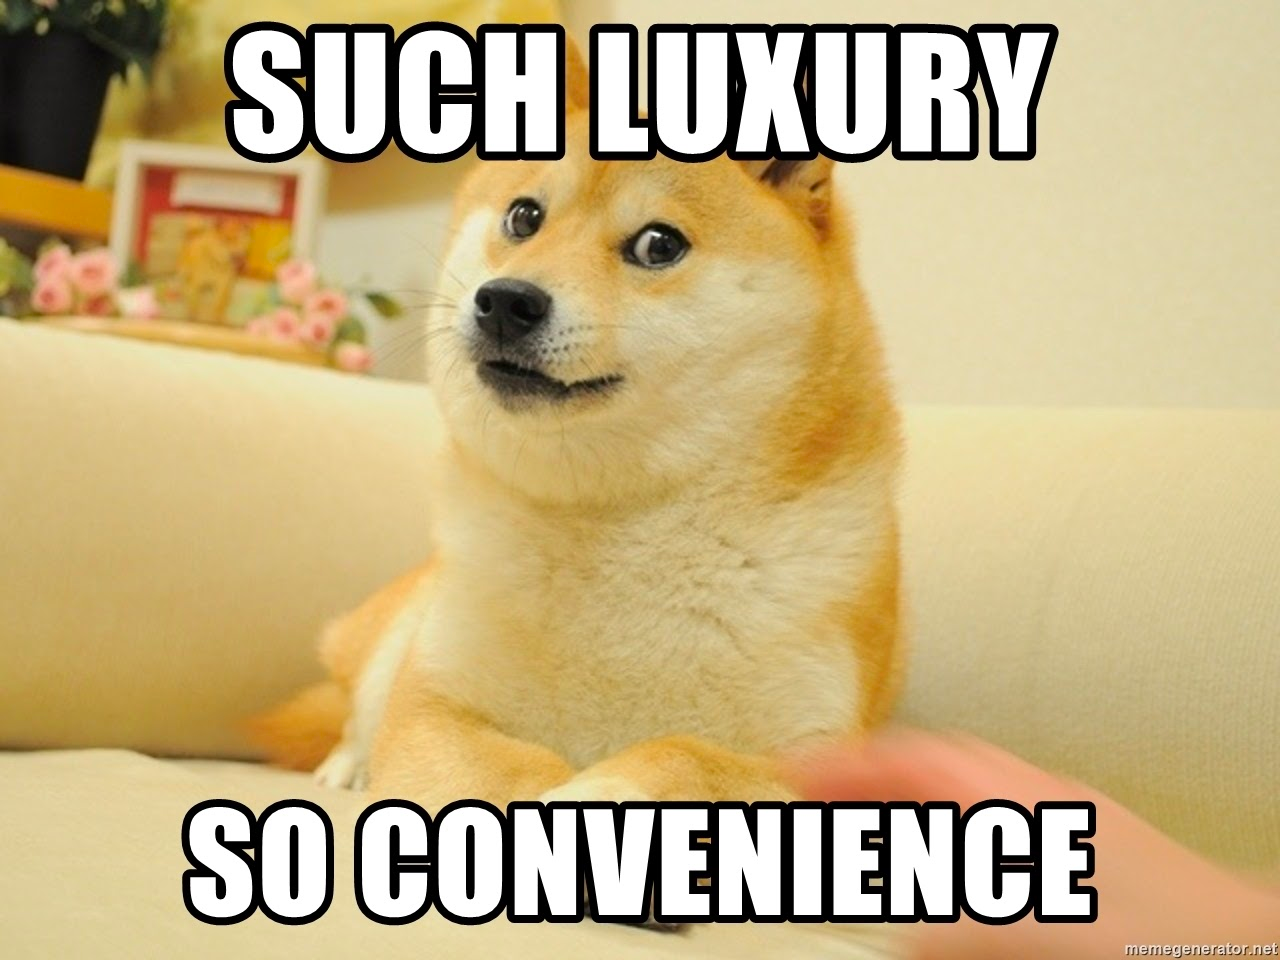 Such luxury